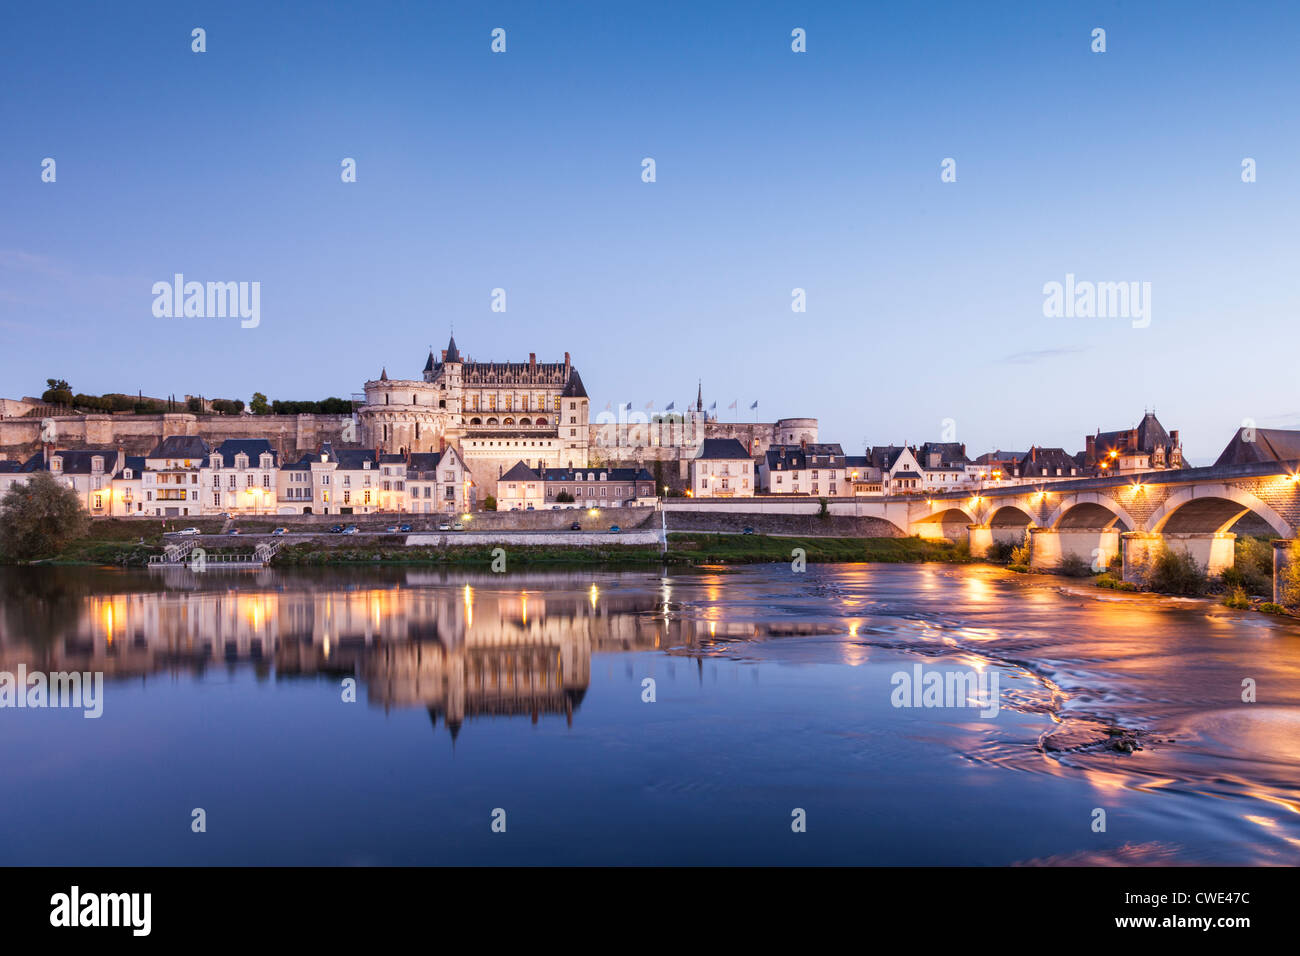 La ciudad amurallada y el castillo de Amboise se refleja en el río Loira en la noche. Foto de stock